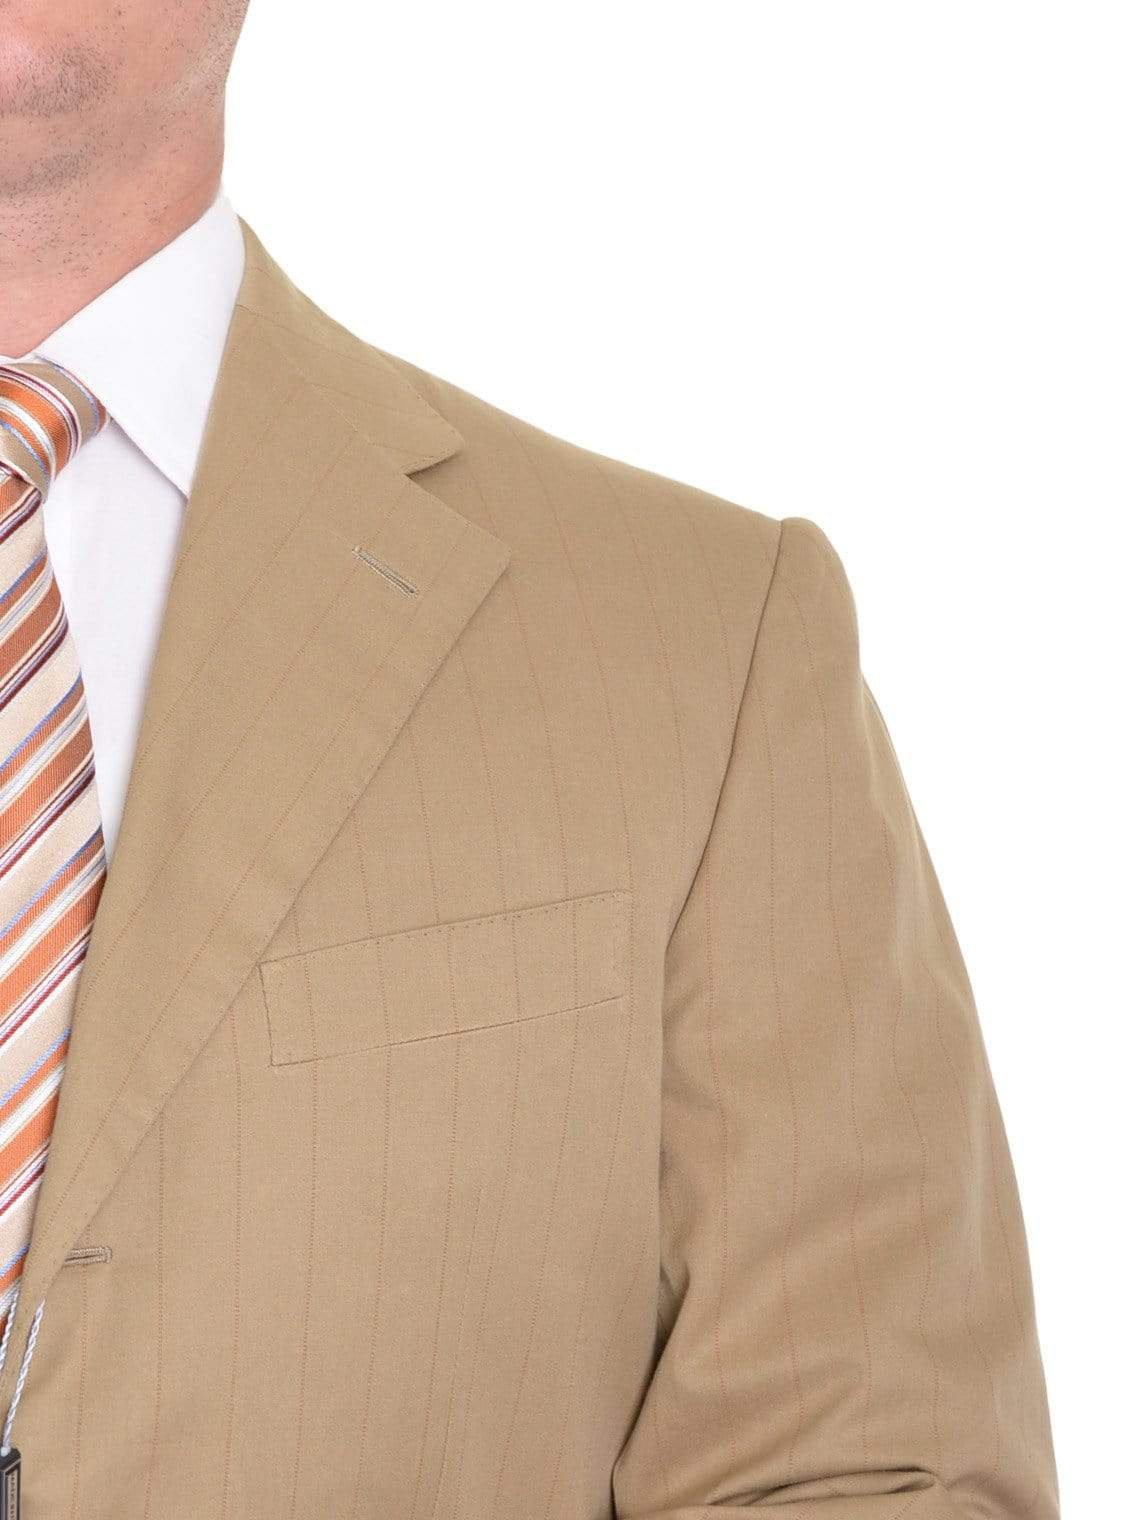 Sartoria Partenopea 40R 50 Tan Striped Unlined Cotton Cashmere Suit - The Suit Depot